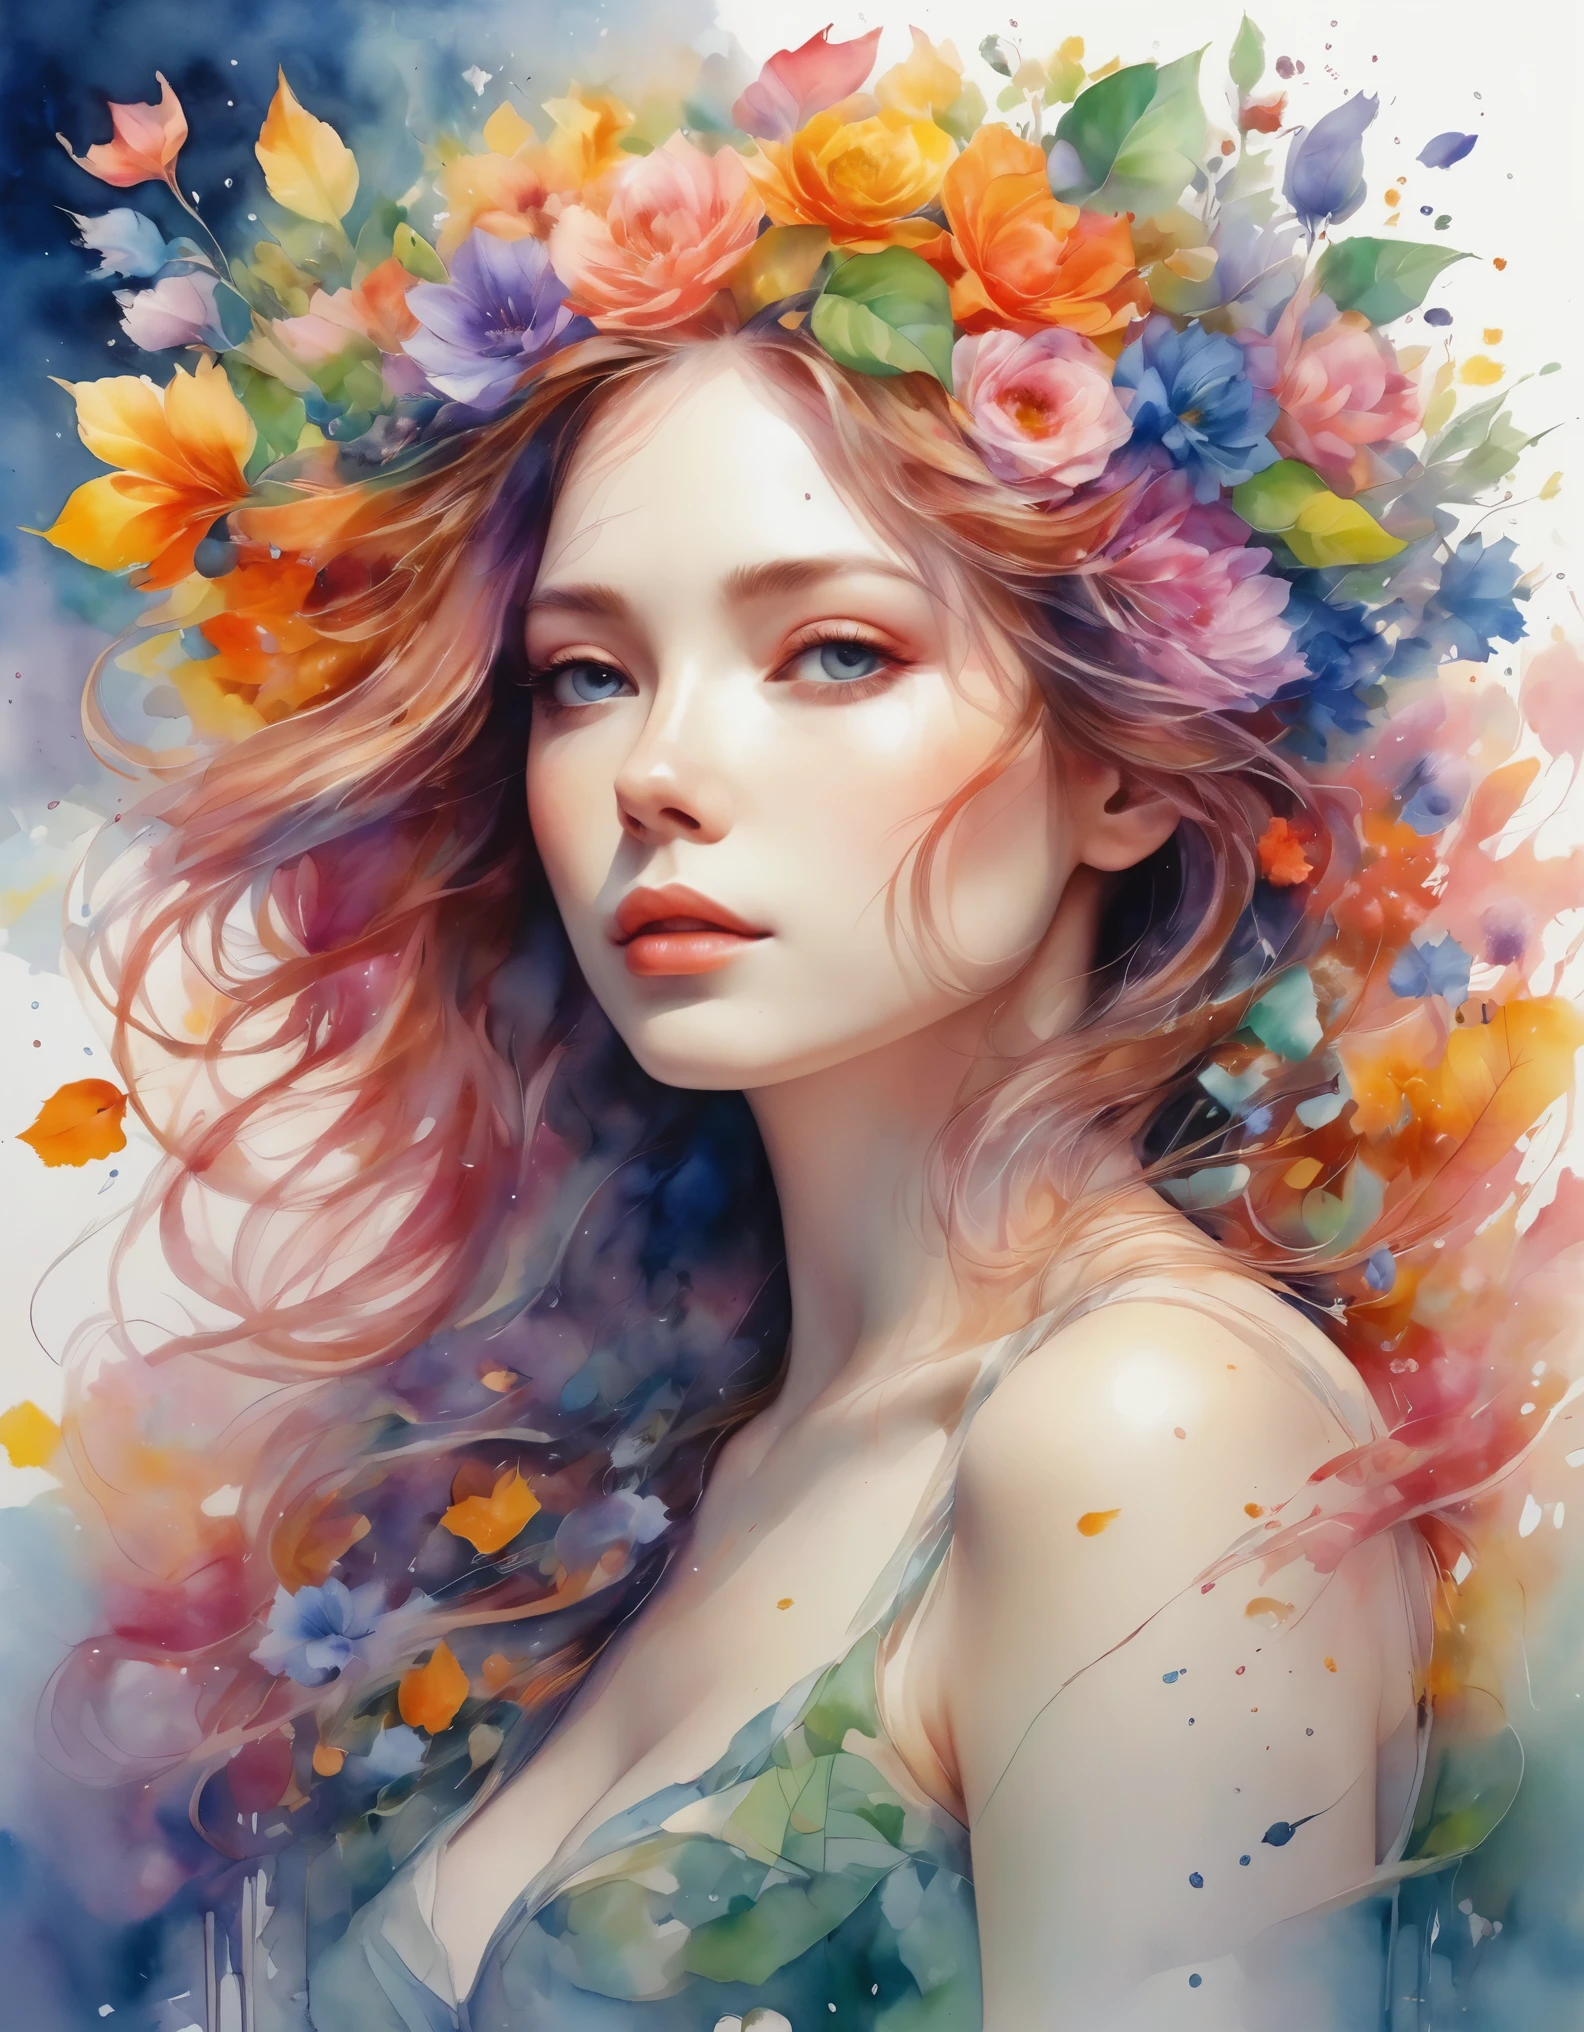 高质量, 8K 超高清, 高详细, 水彩, 清洗技术, 丰富多彩的, 一幅油漆散落的画, 像艾格尼丝·塞西尔 (Agnes Cecile) 一样绘画, 模糊, 苍白的触感, 轮廓模糊, 童话 (卡通着色):: 用花朵色彩制作的美丽女人, 花卉和植物, 切割并组合花瓣和叶子, 用花朵的颜色和形状画出女人的头发和衣服, 鲜艳的色彩和自然, 发光主义, 3D 效果, 增强美感, 艾伯特·安克, 感觉像约翰·豪, 格雷格·鲁特科斯基, 感觉像京都动画, 艾特杰姆, 沃洛普, 阿方斯·比普尔, 发光主义, 等距, 令人惊叹的全彩,